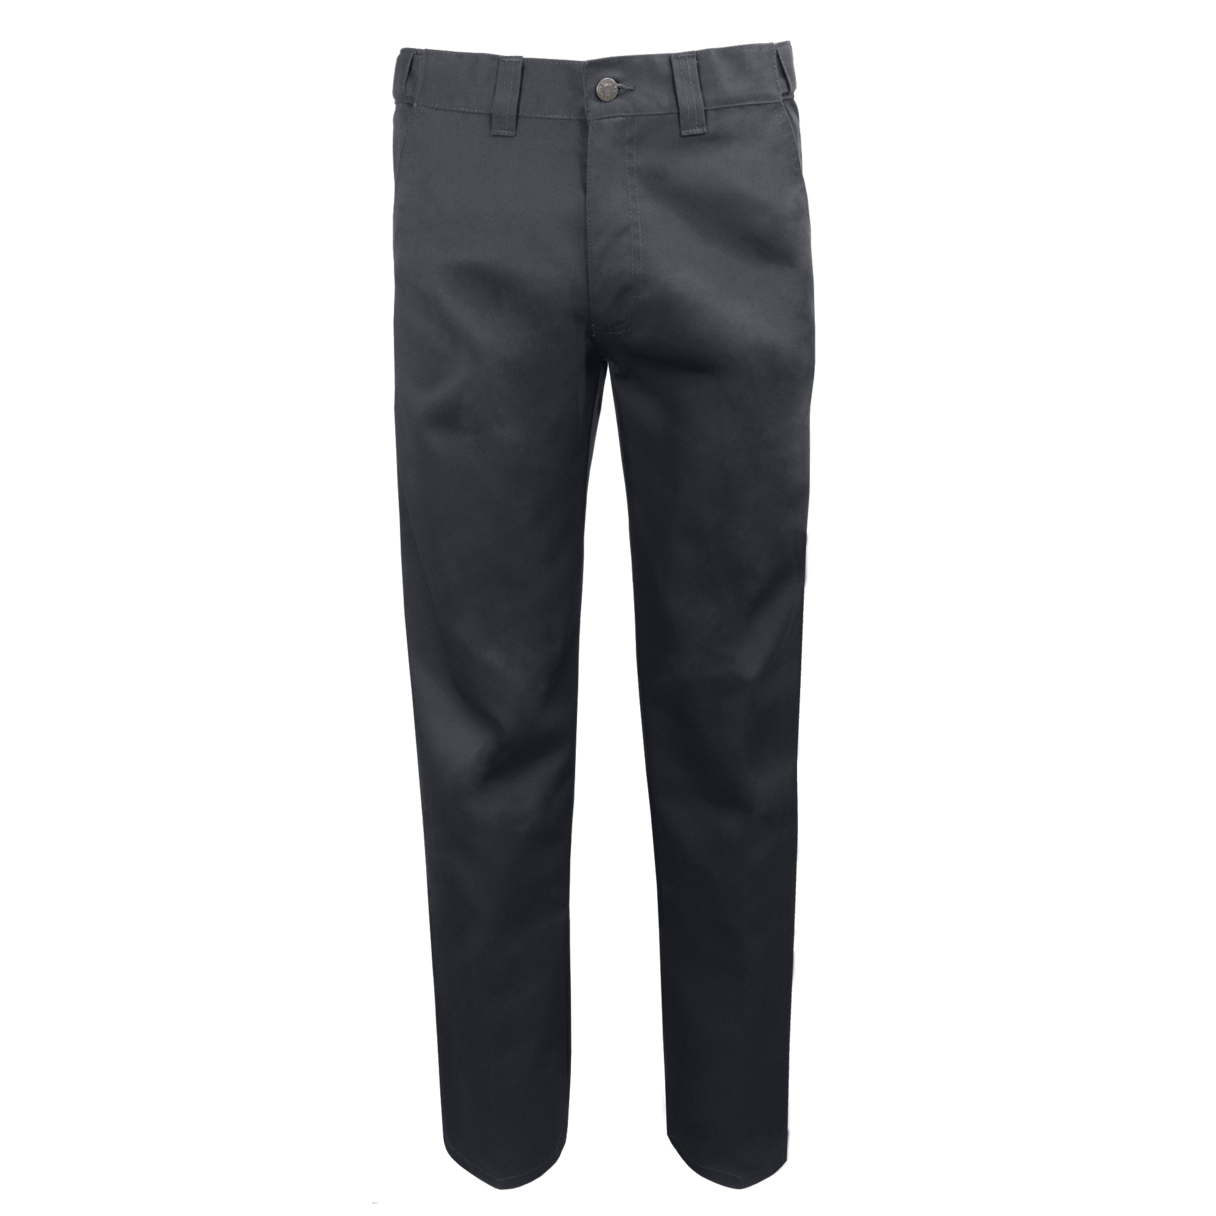 Pantalon de travail taille flexible Gatts #MRB-777-N gris